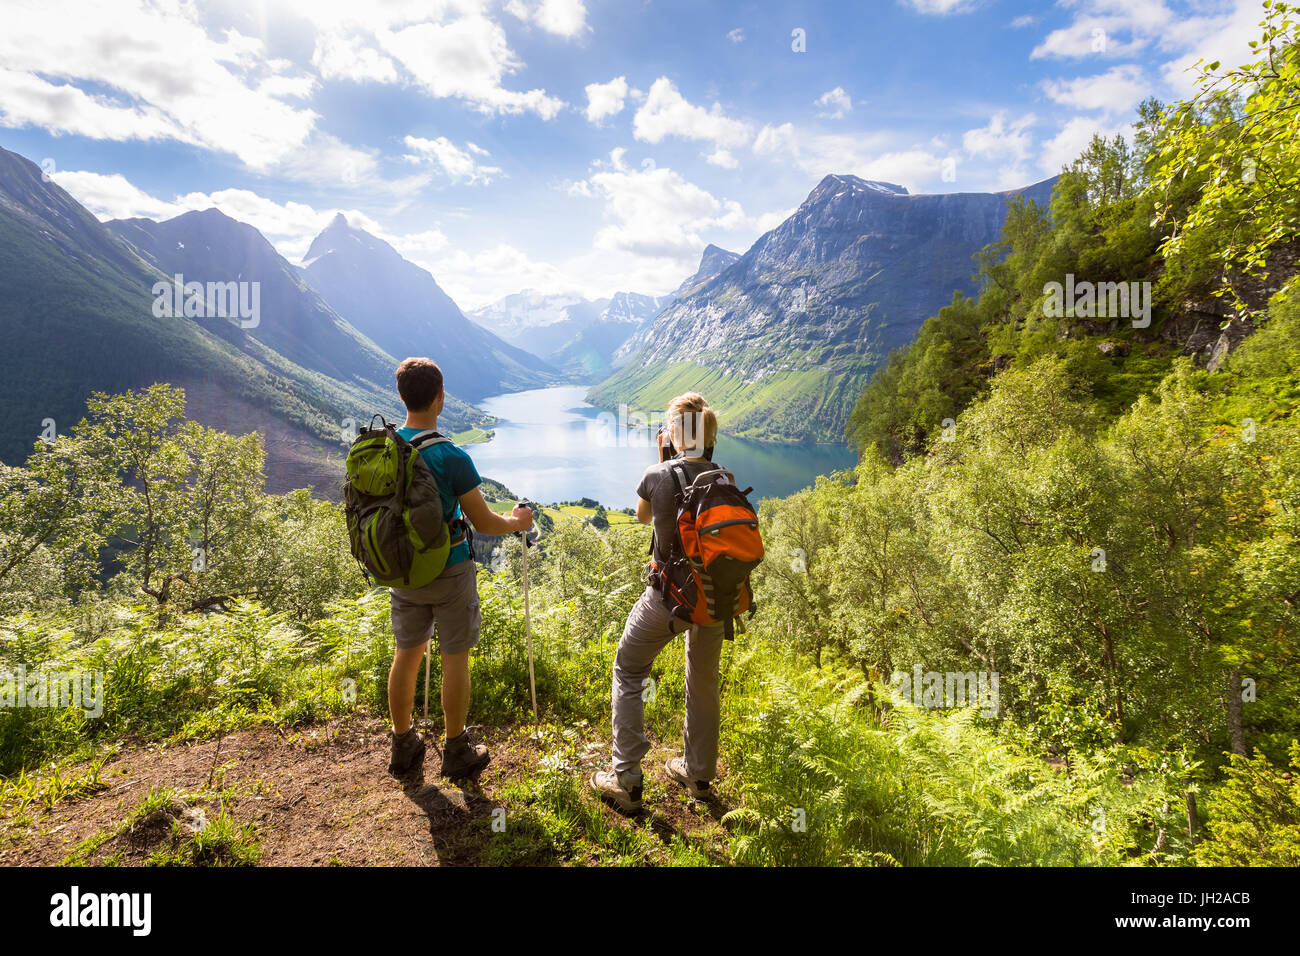 Deux randonneurs à vue dans les montagnes avec sa vue sur la vallée avec un temps chaud et ensoleillé du lac en été, le vert des arbres autour Banque D'Images